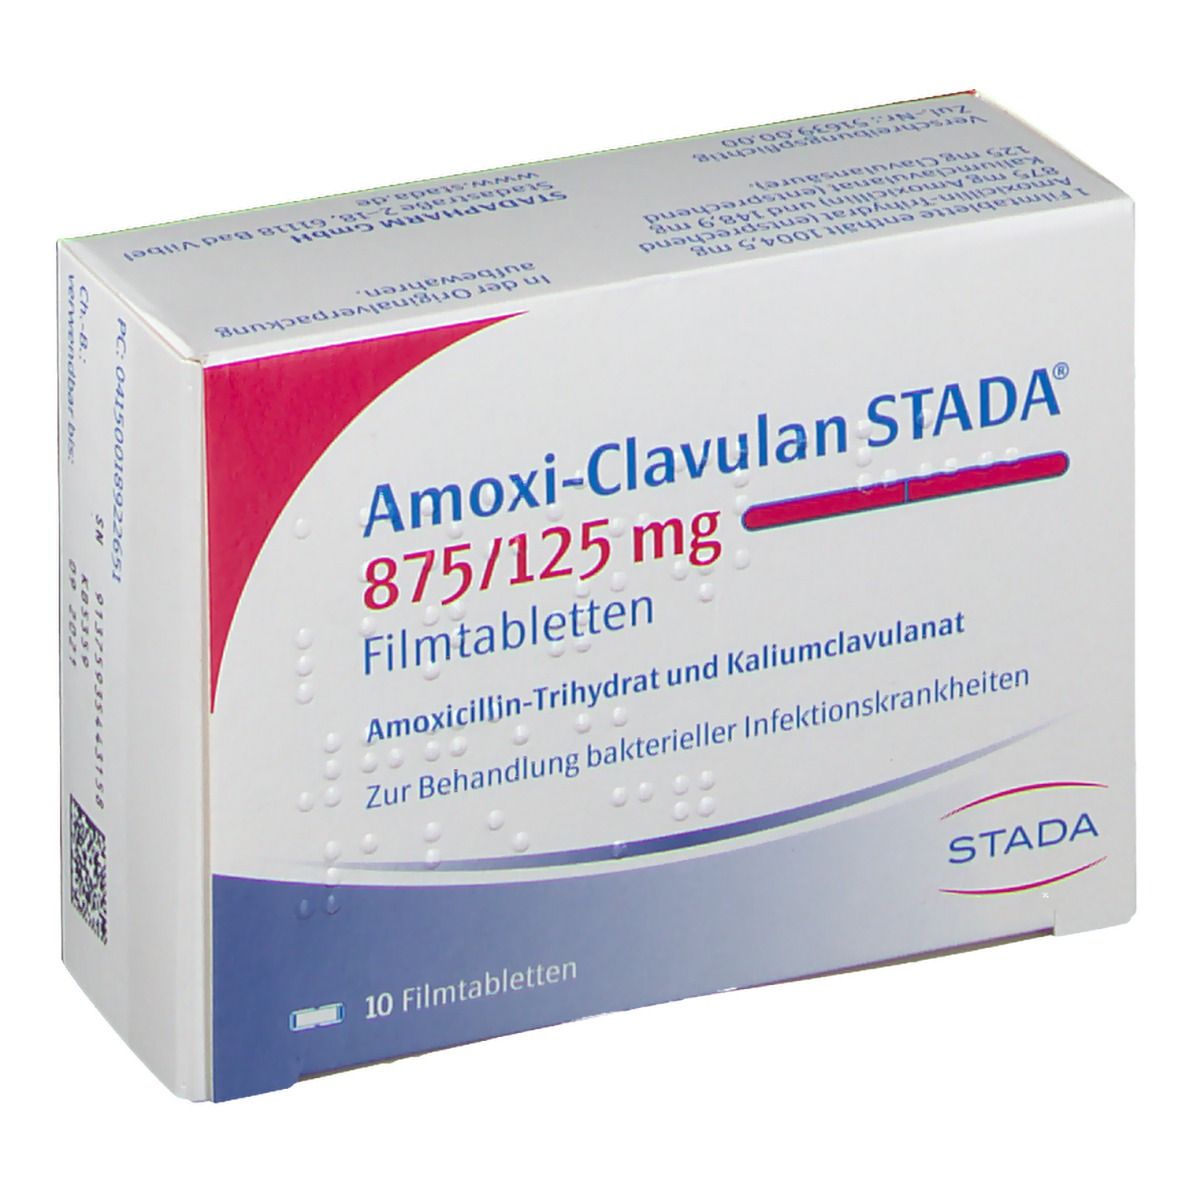 Amoxi-Clavulan STADA® 875/125 mg